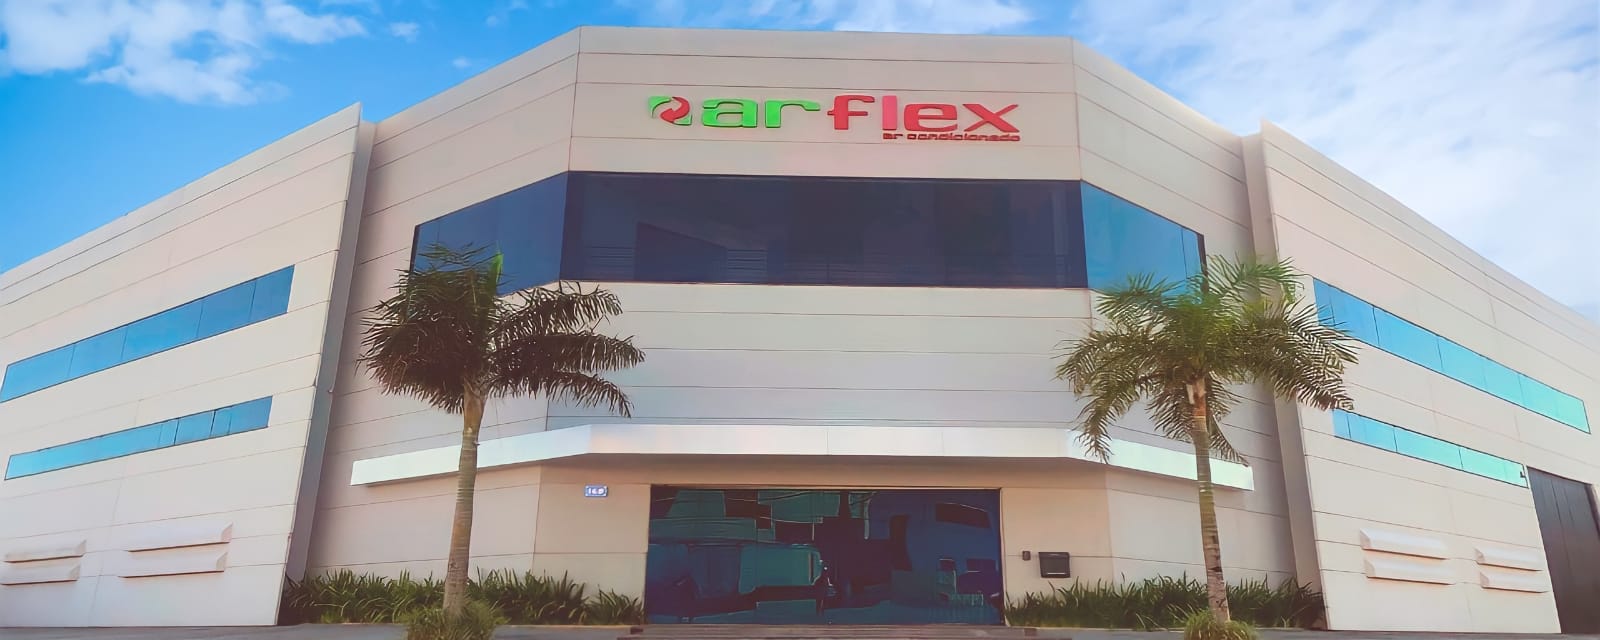 Arflex Ar Condicionado